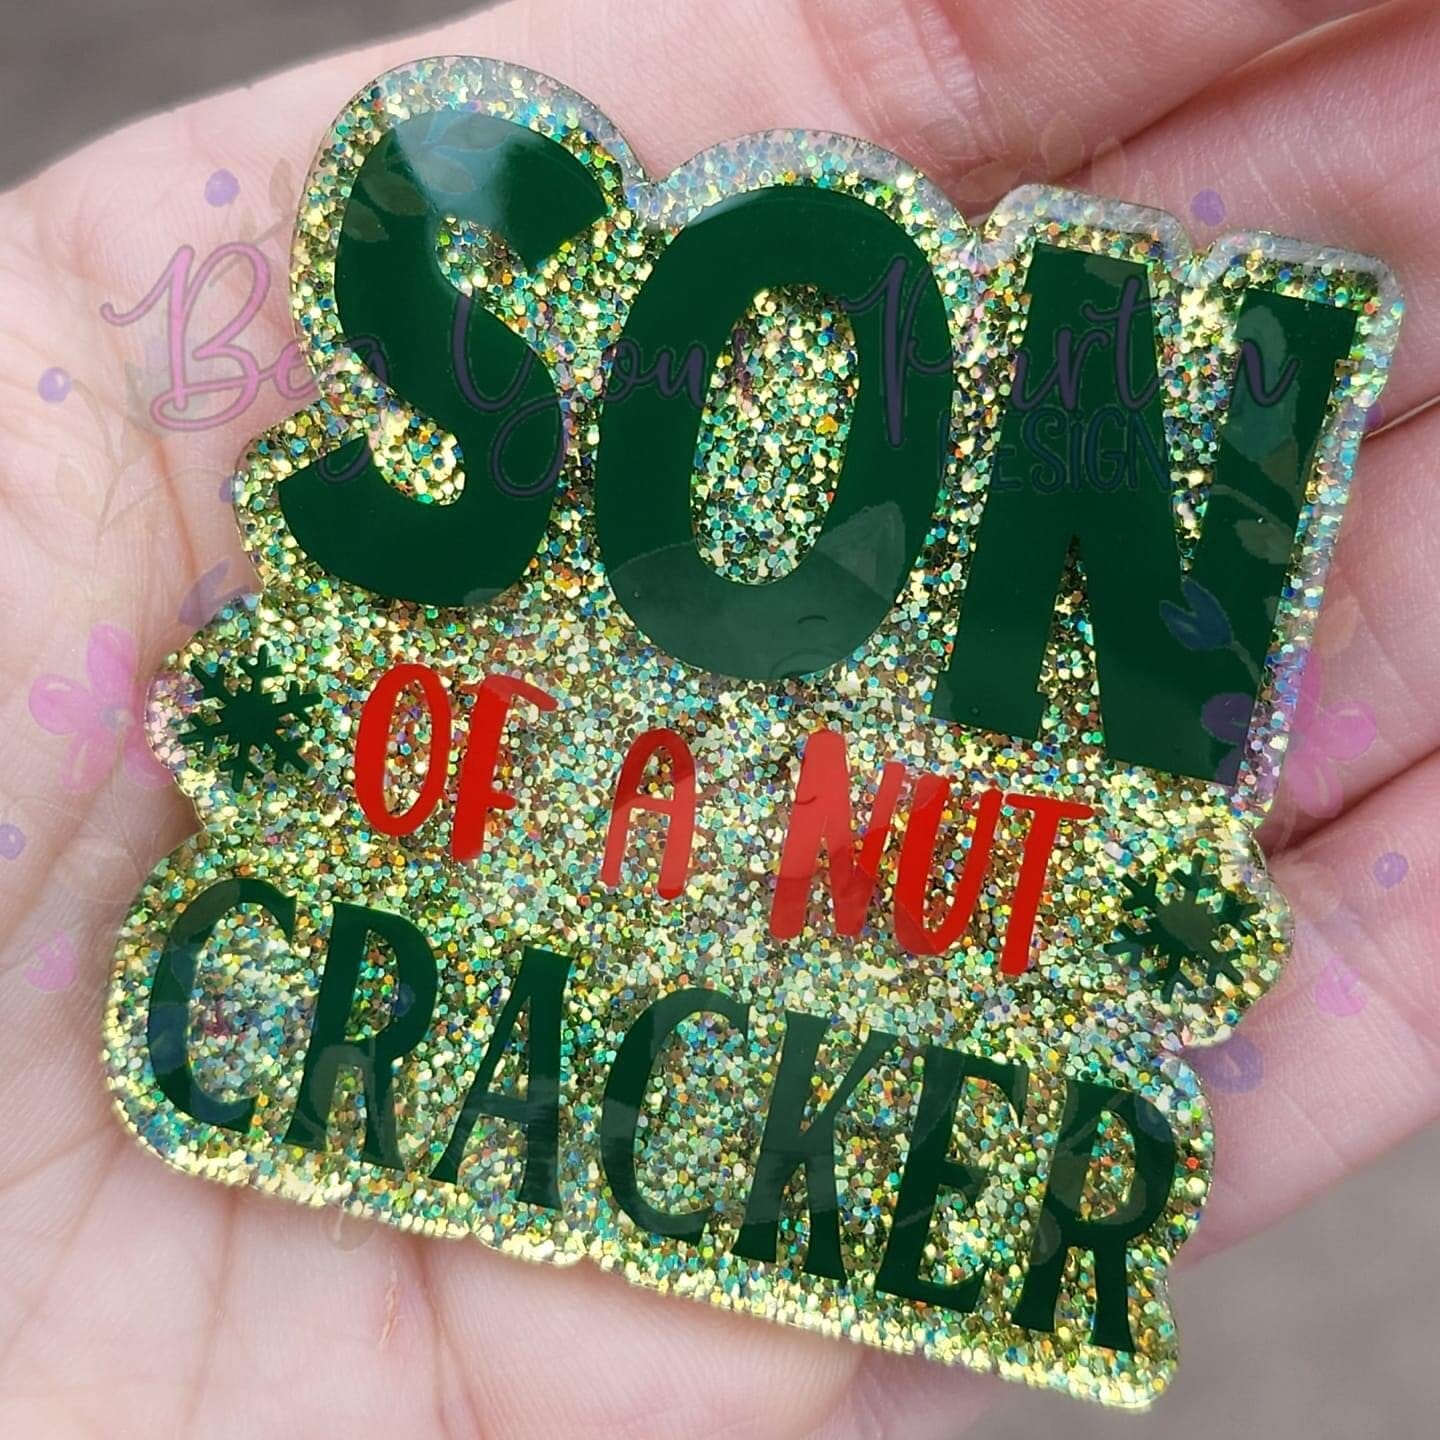 Son of a Nut Cracker - Acrylic Shape #1099